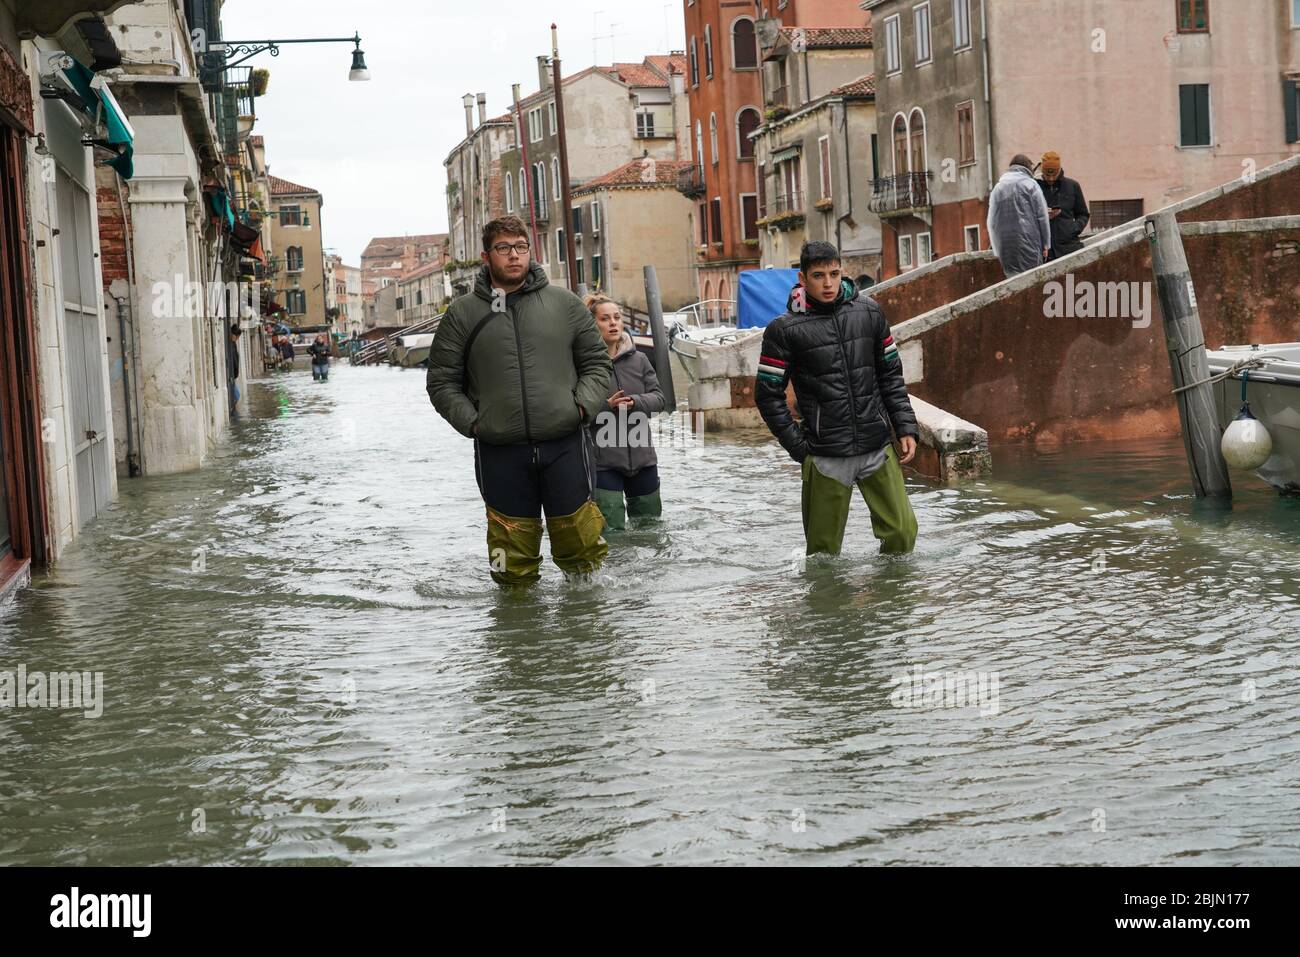 High tide in Venice, Fondamenta della Misericordia, november 2019, Venice, Italy, Europe Stock Photo